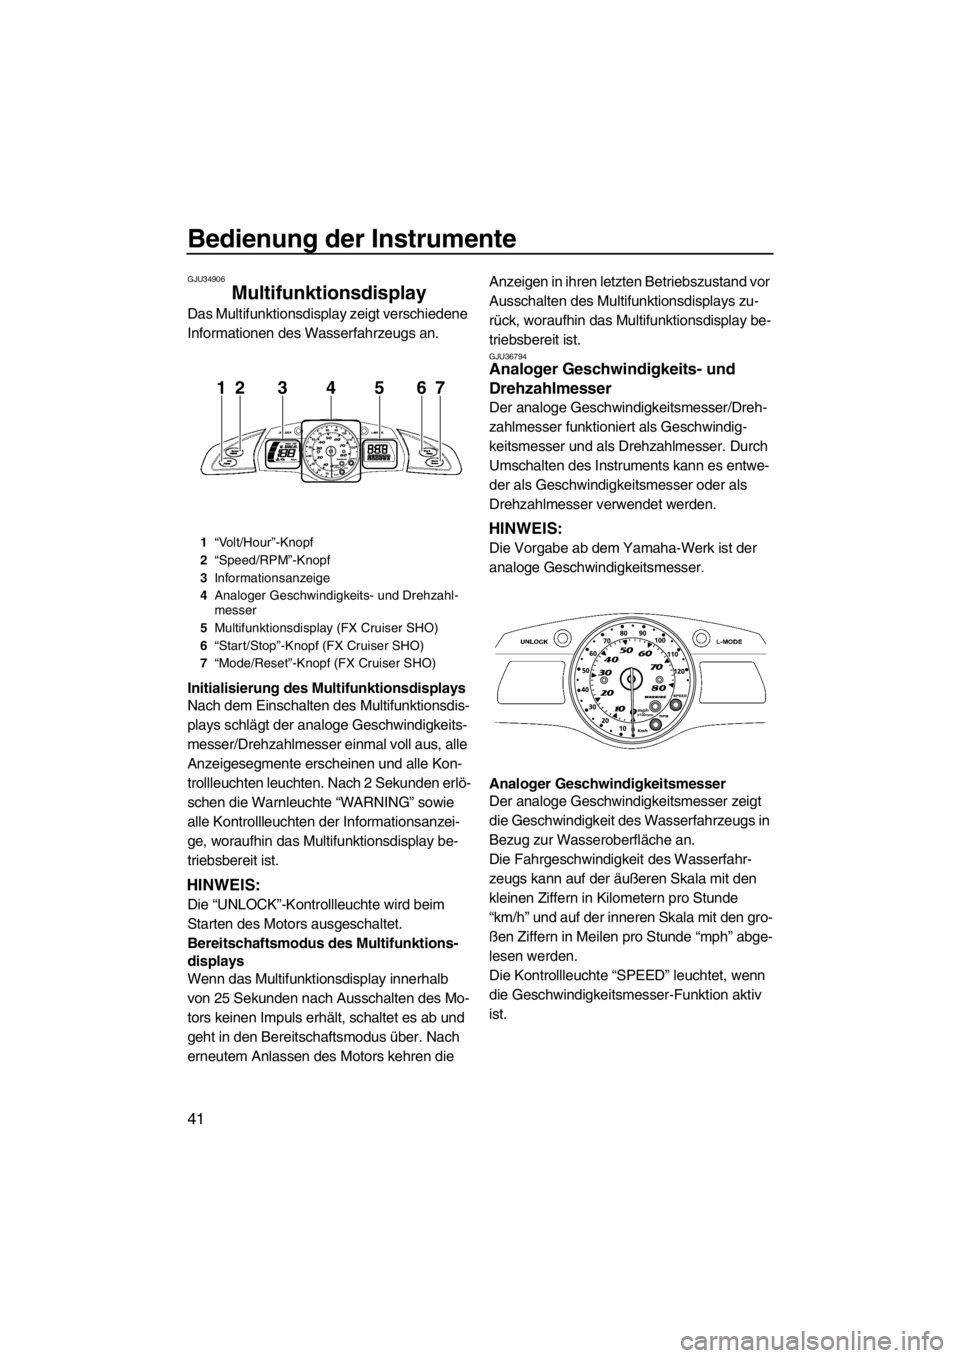 YAMAHA SVHO 2011  Betriebsanleitungen (in German) Bedienung der Instrumente
41
GJU34906
Multifunktionsdisplay 
Das Multifunktionsdisplay zeigt verschiedene 
Informationen des Wasserfahrzeugs an.
Initialisierung des Multifunktionsdisplays
Nach dem Ein